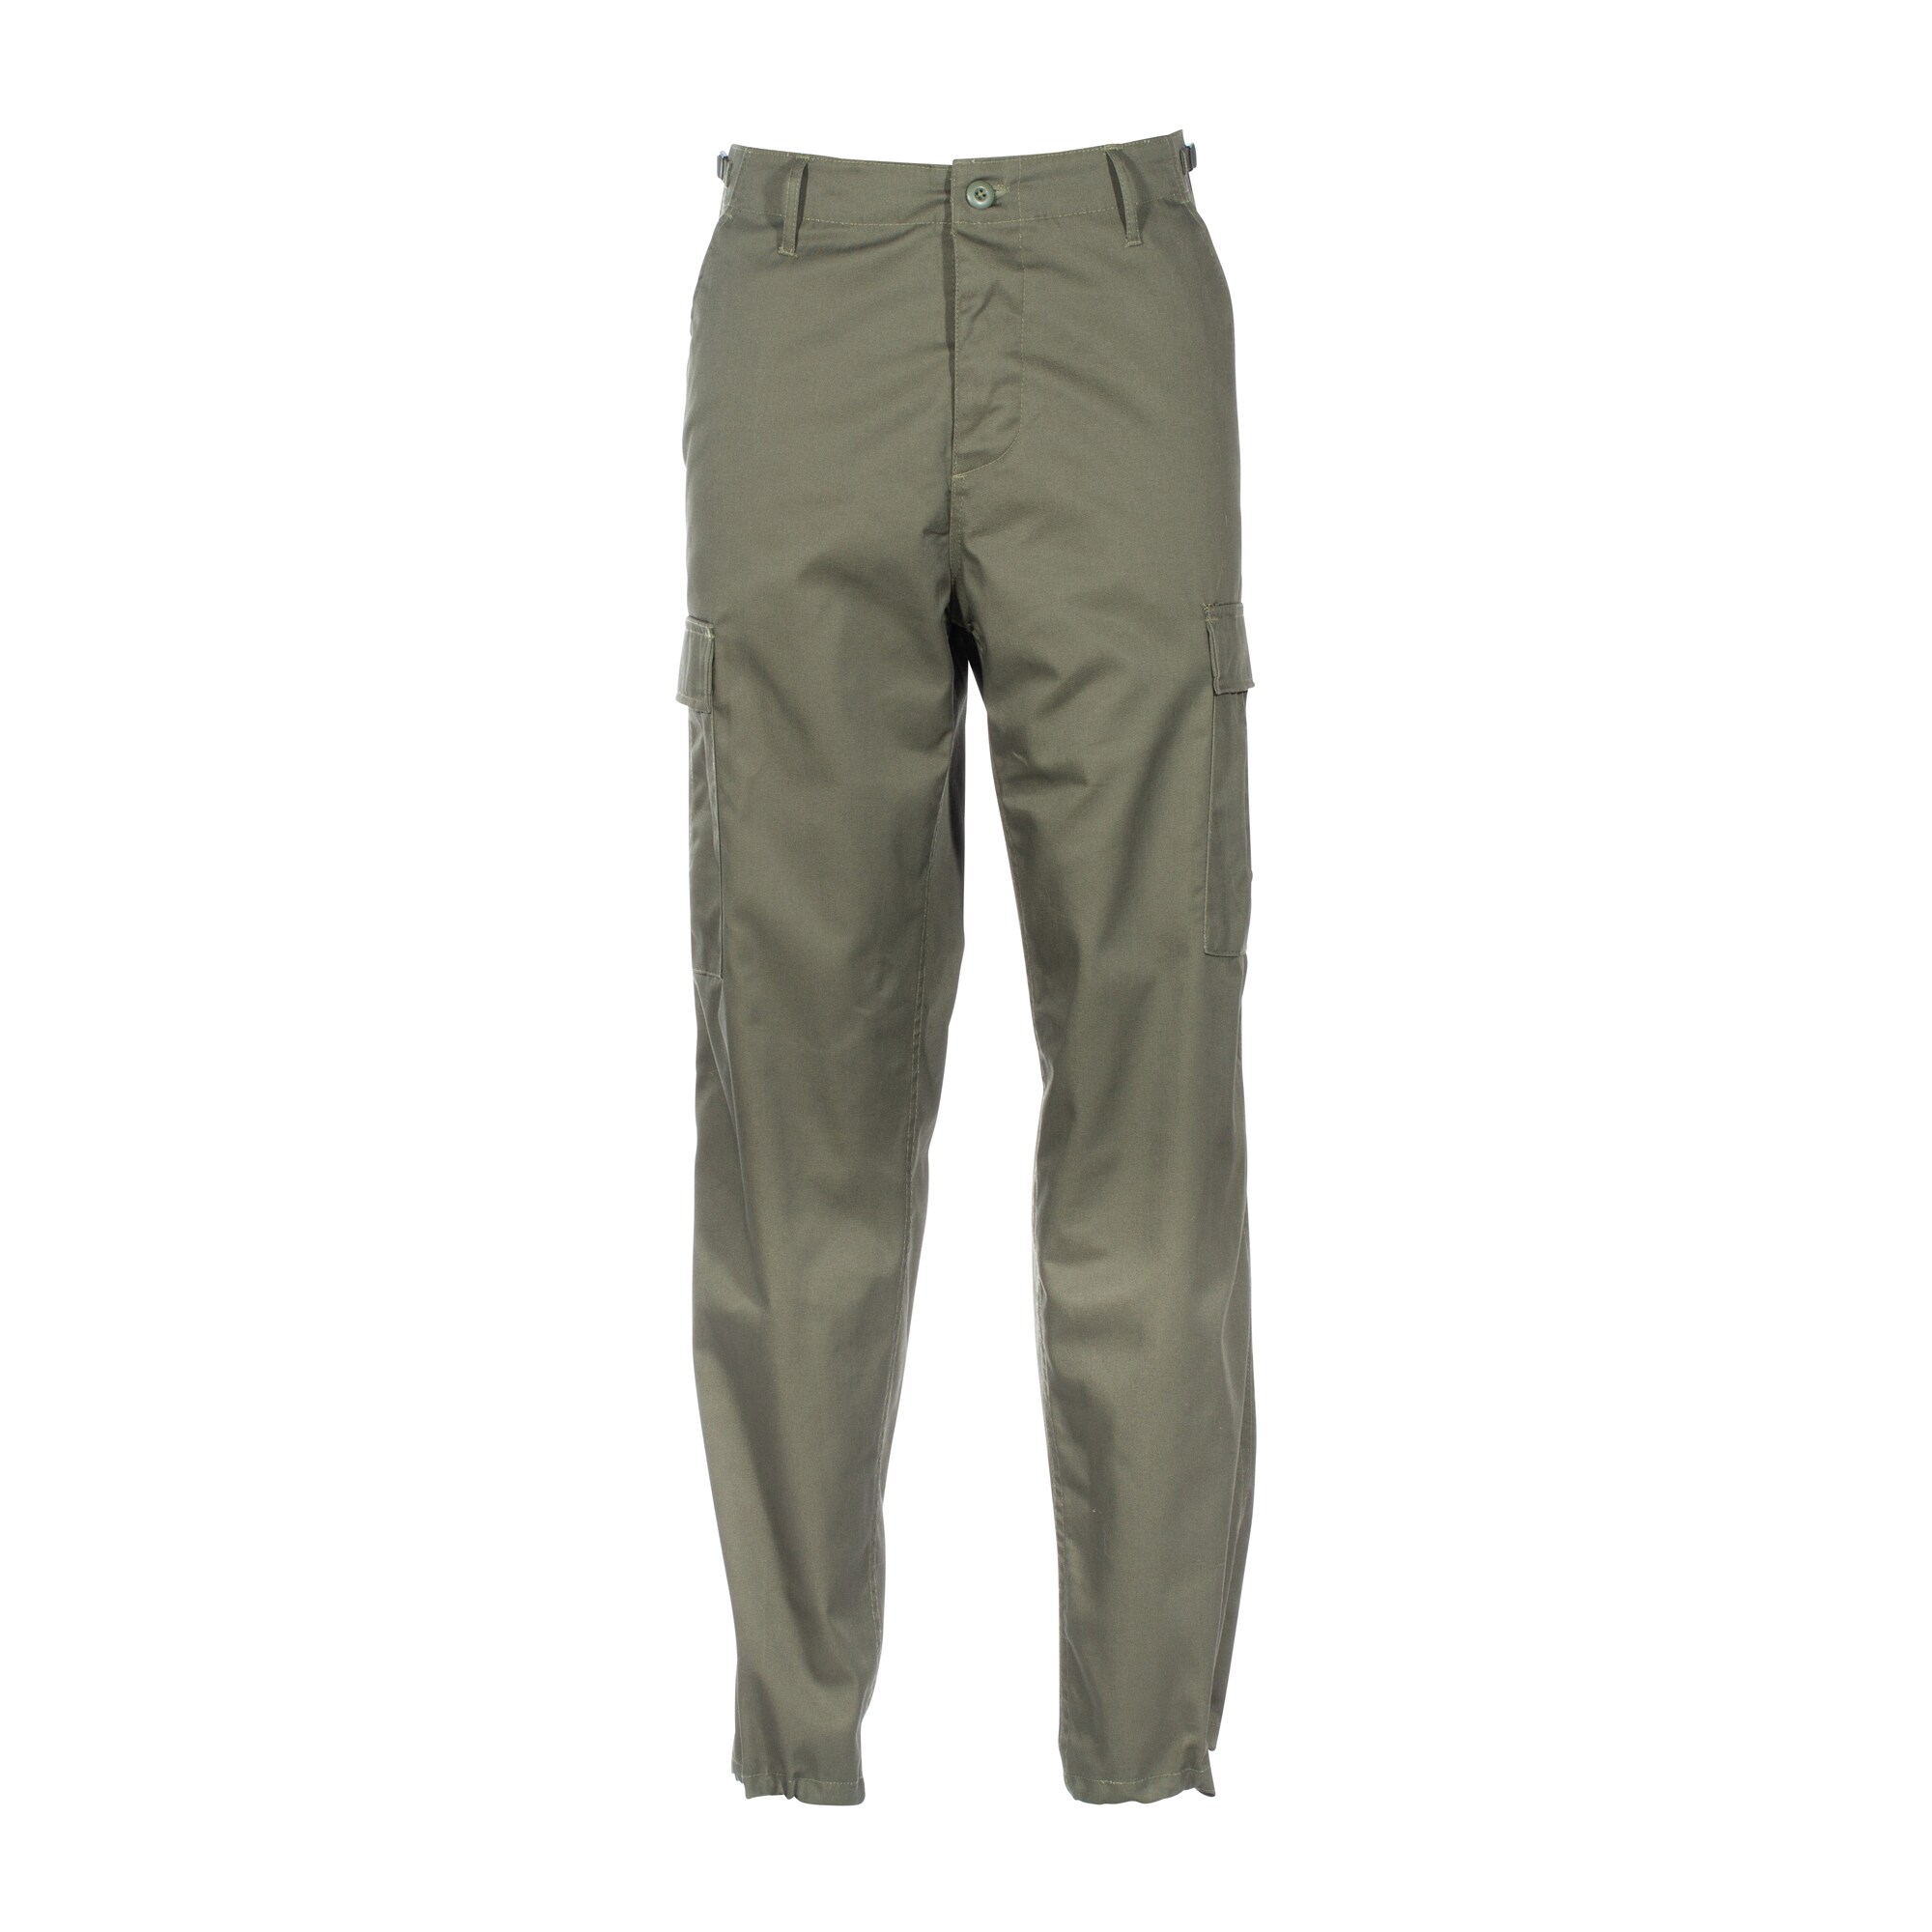 Ranger Pants olive | Ranger Pants olive | Pants | Trousers | Men | Clothing